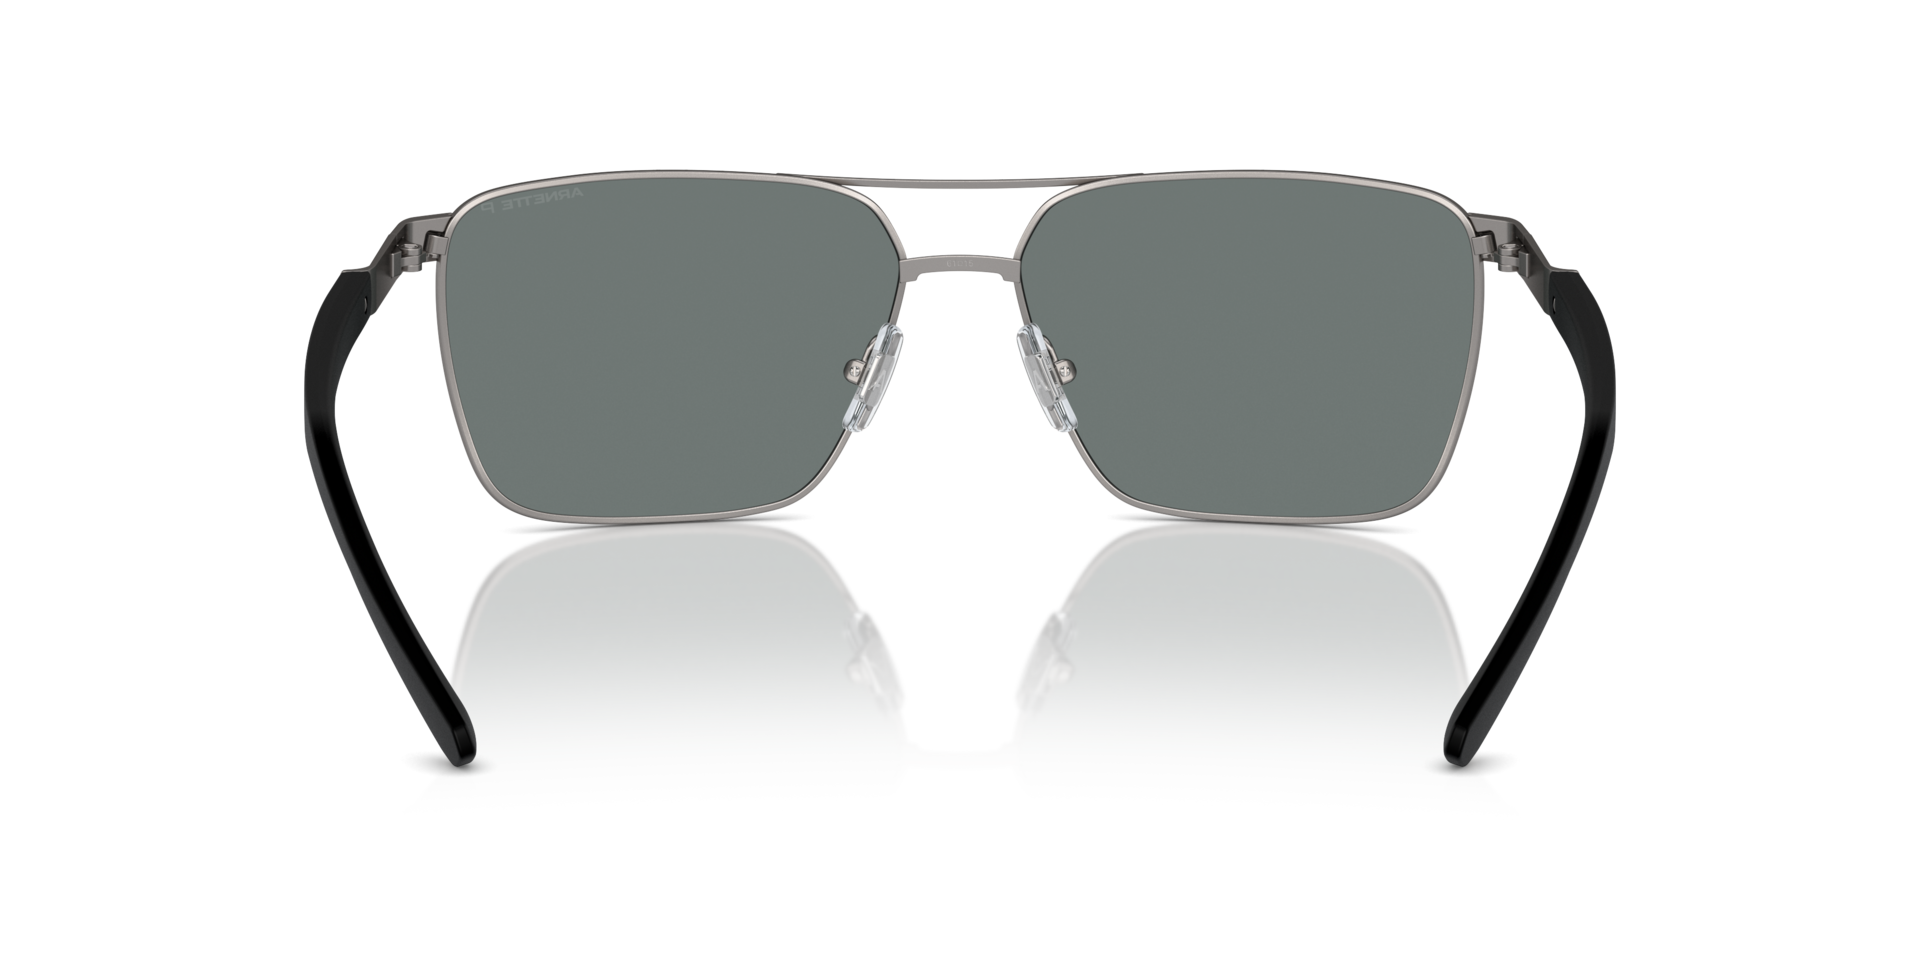 Das Bild zeigt die Sonnenbrille AN3091 745/81 von der Marke Arnette in gunmetal.